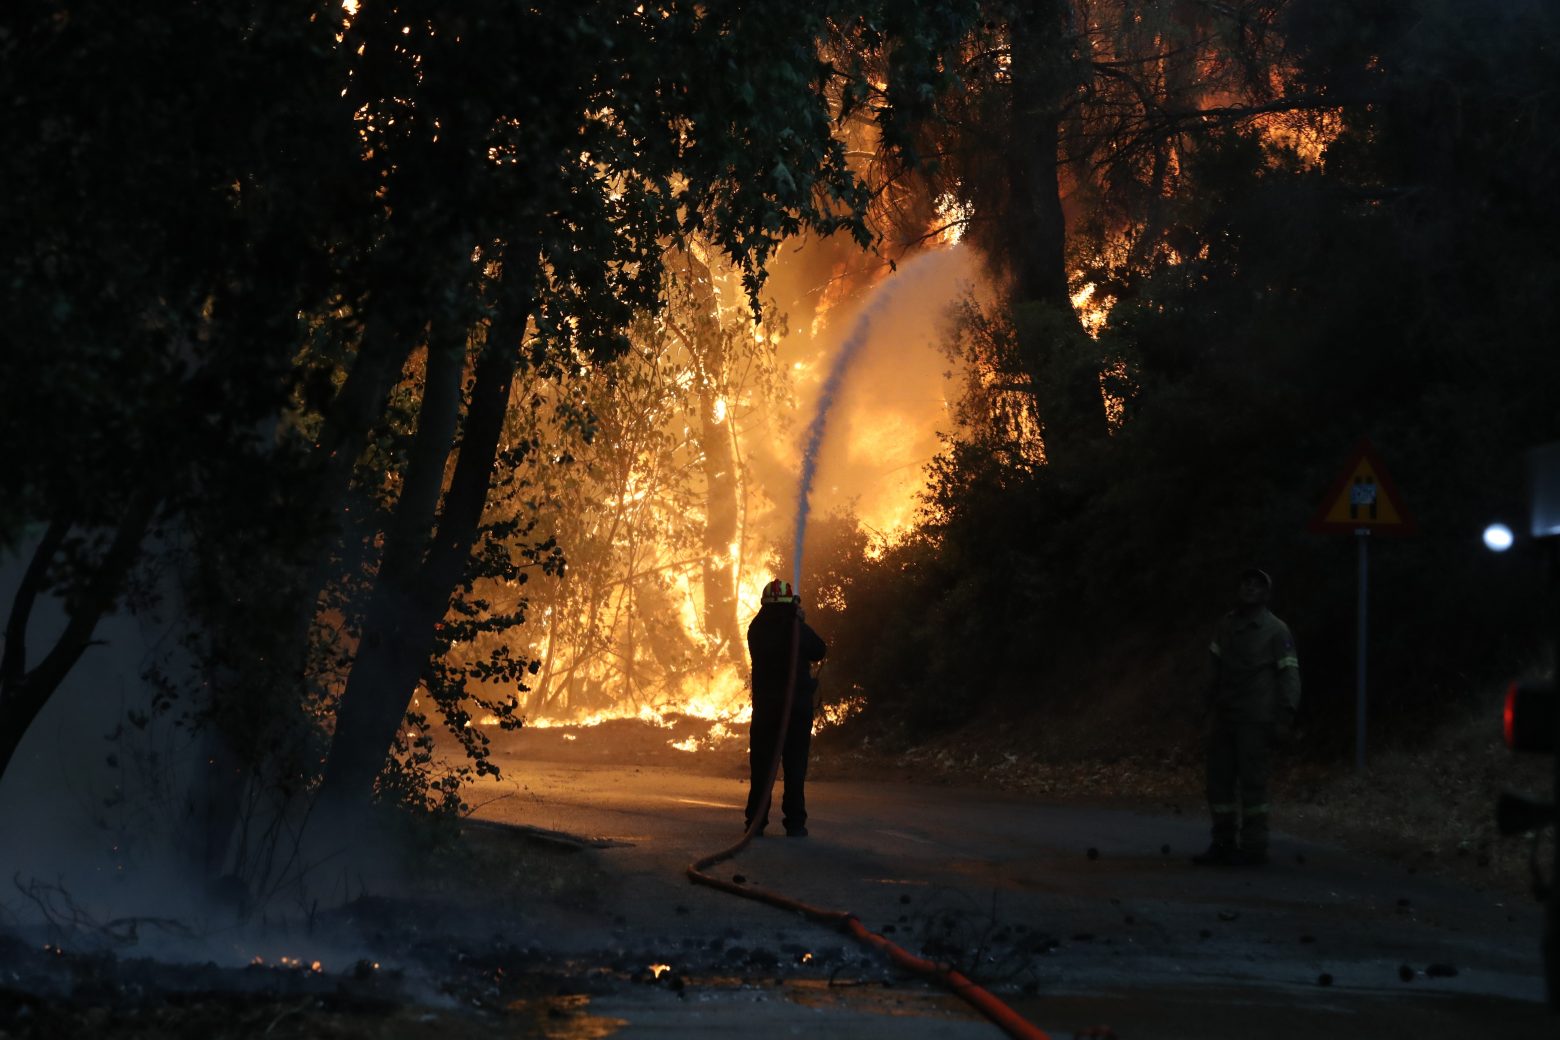 Χαρδαλιάς - 40 ενεργά μέτωπα σε όλη την Ελλάδα - Επικίνδυνη φωτιά σε τρία μέτωπα στη Βαρυμπόμπη